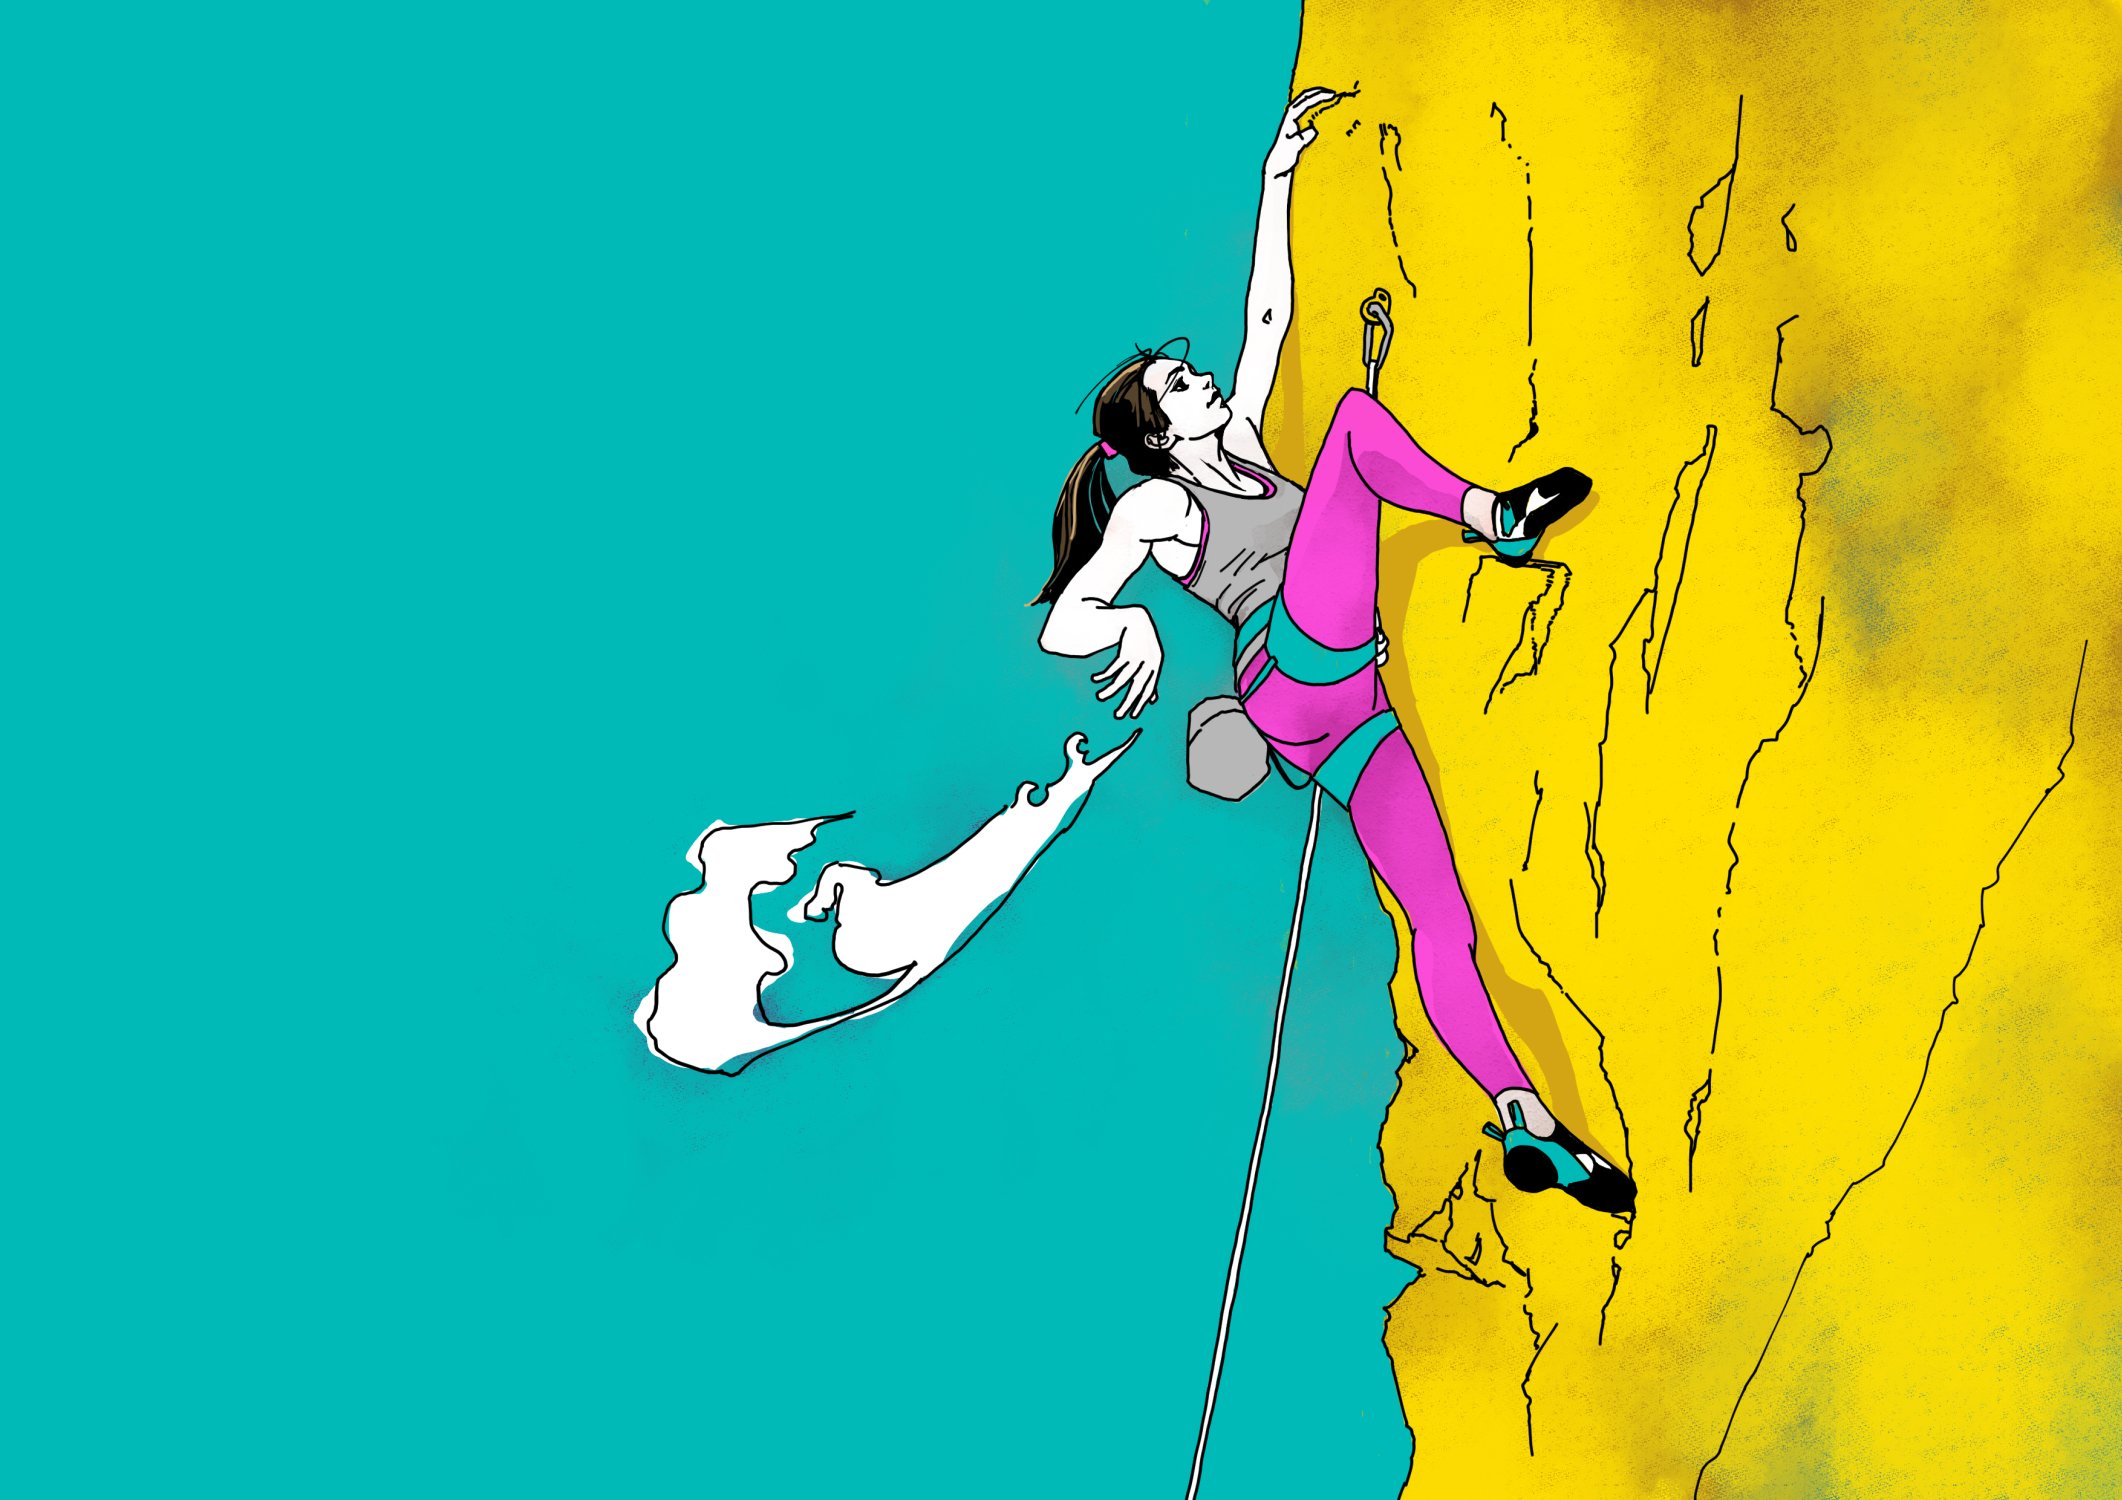 たなゆ クライミングイラスト描いてます 女性クライマーってカッコイイ そんな敬意を込めて 途中段階しかツイートしてなかったので改めて掲載 Climbing クライミング Bouldering ボルダリング イラスト Illustration T Co Mepem04i2v